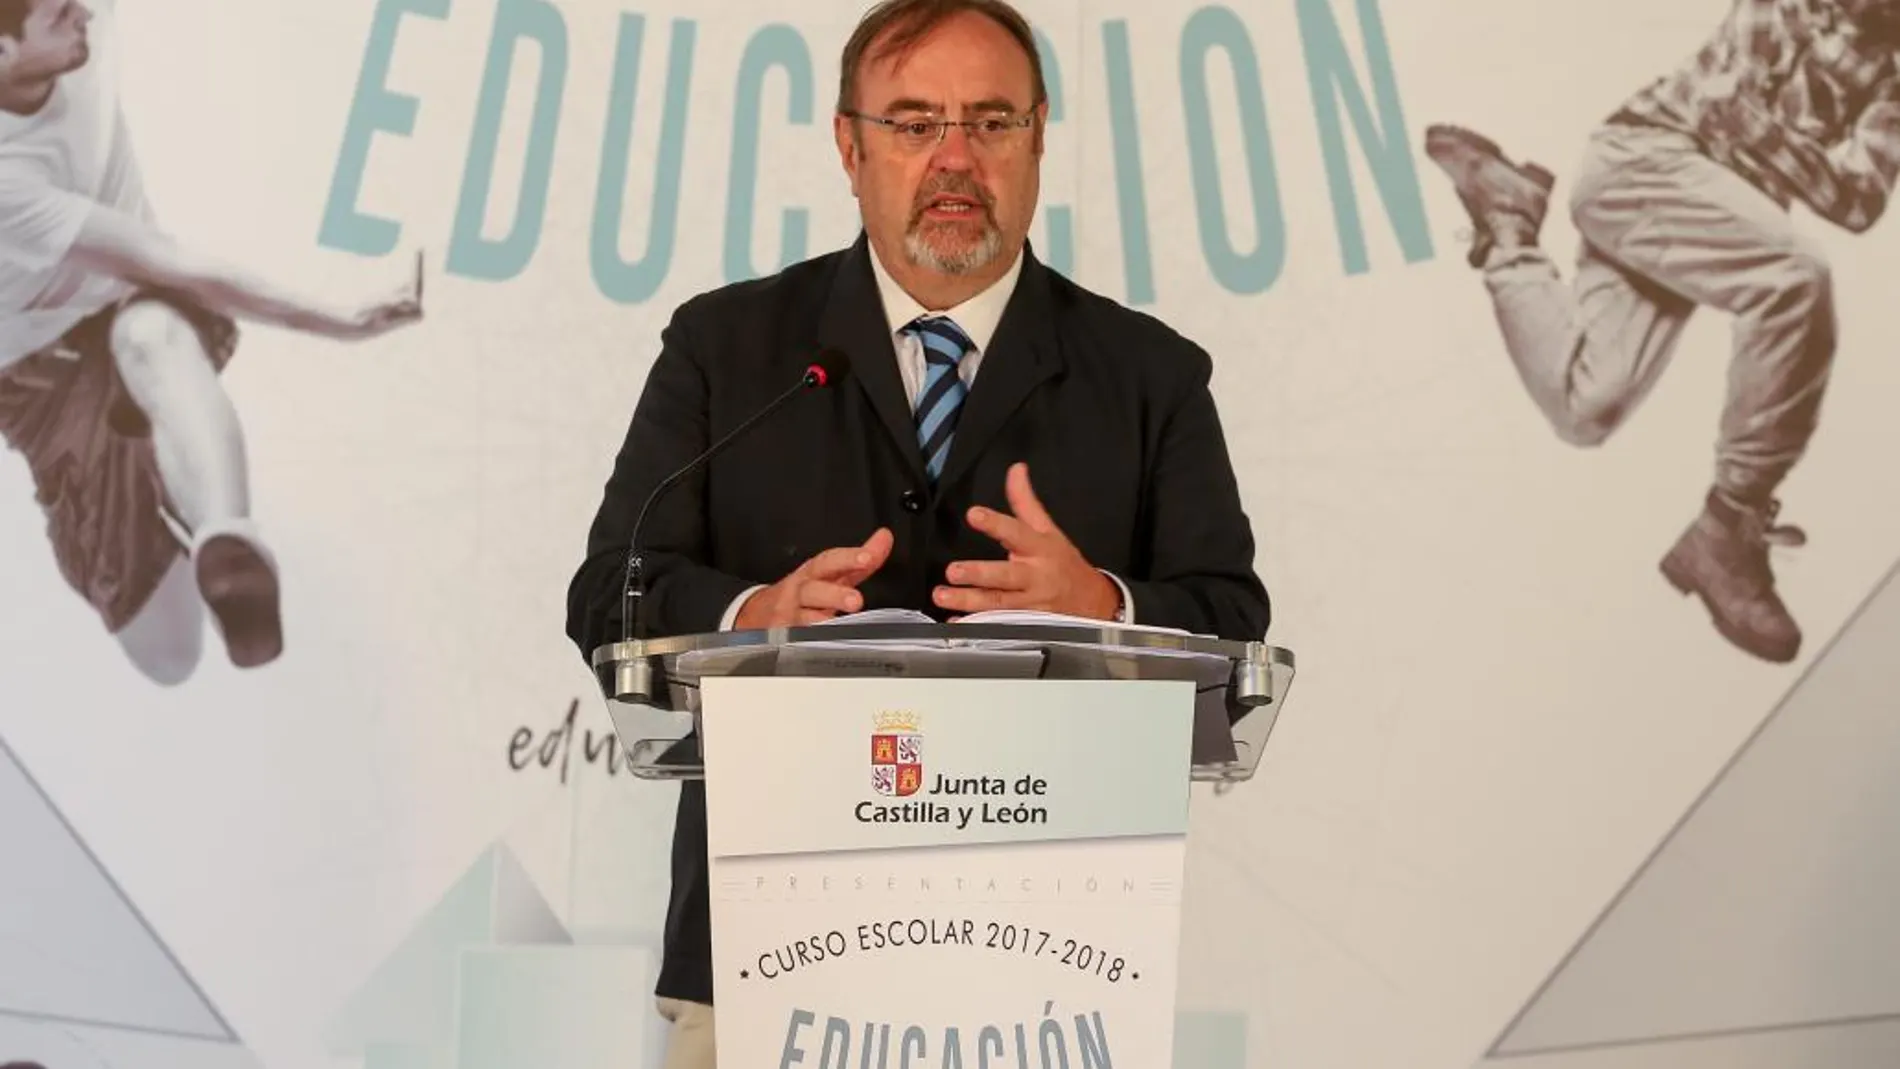 El consejero de Educación de la Junta, Fernando Rey, presenta el curso escolar 2017-2018